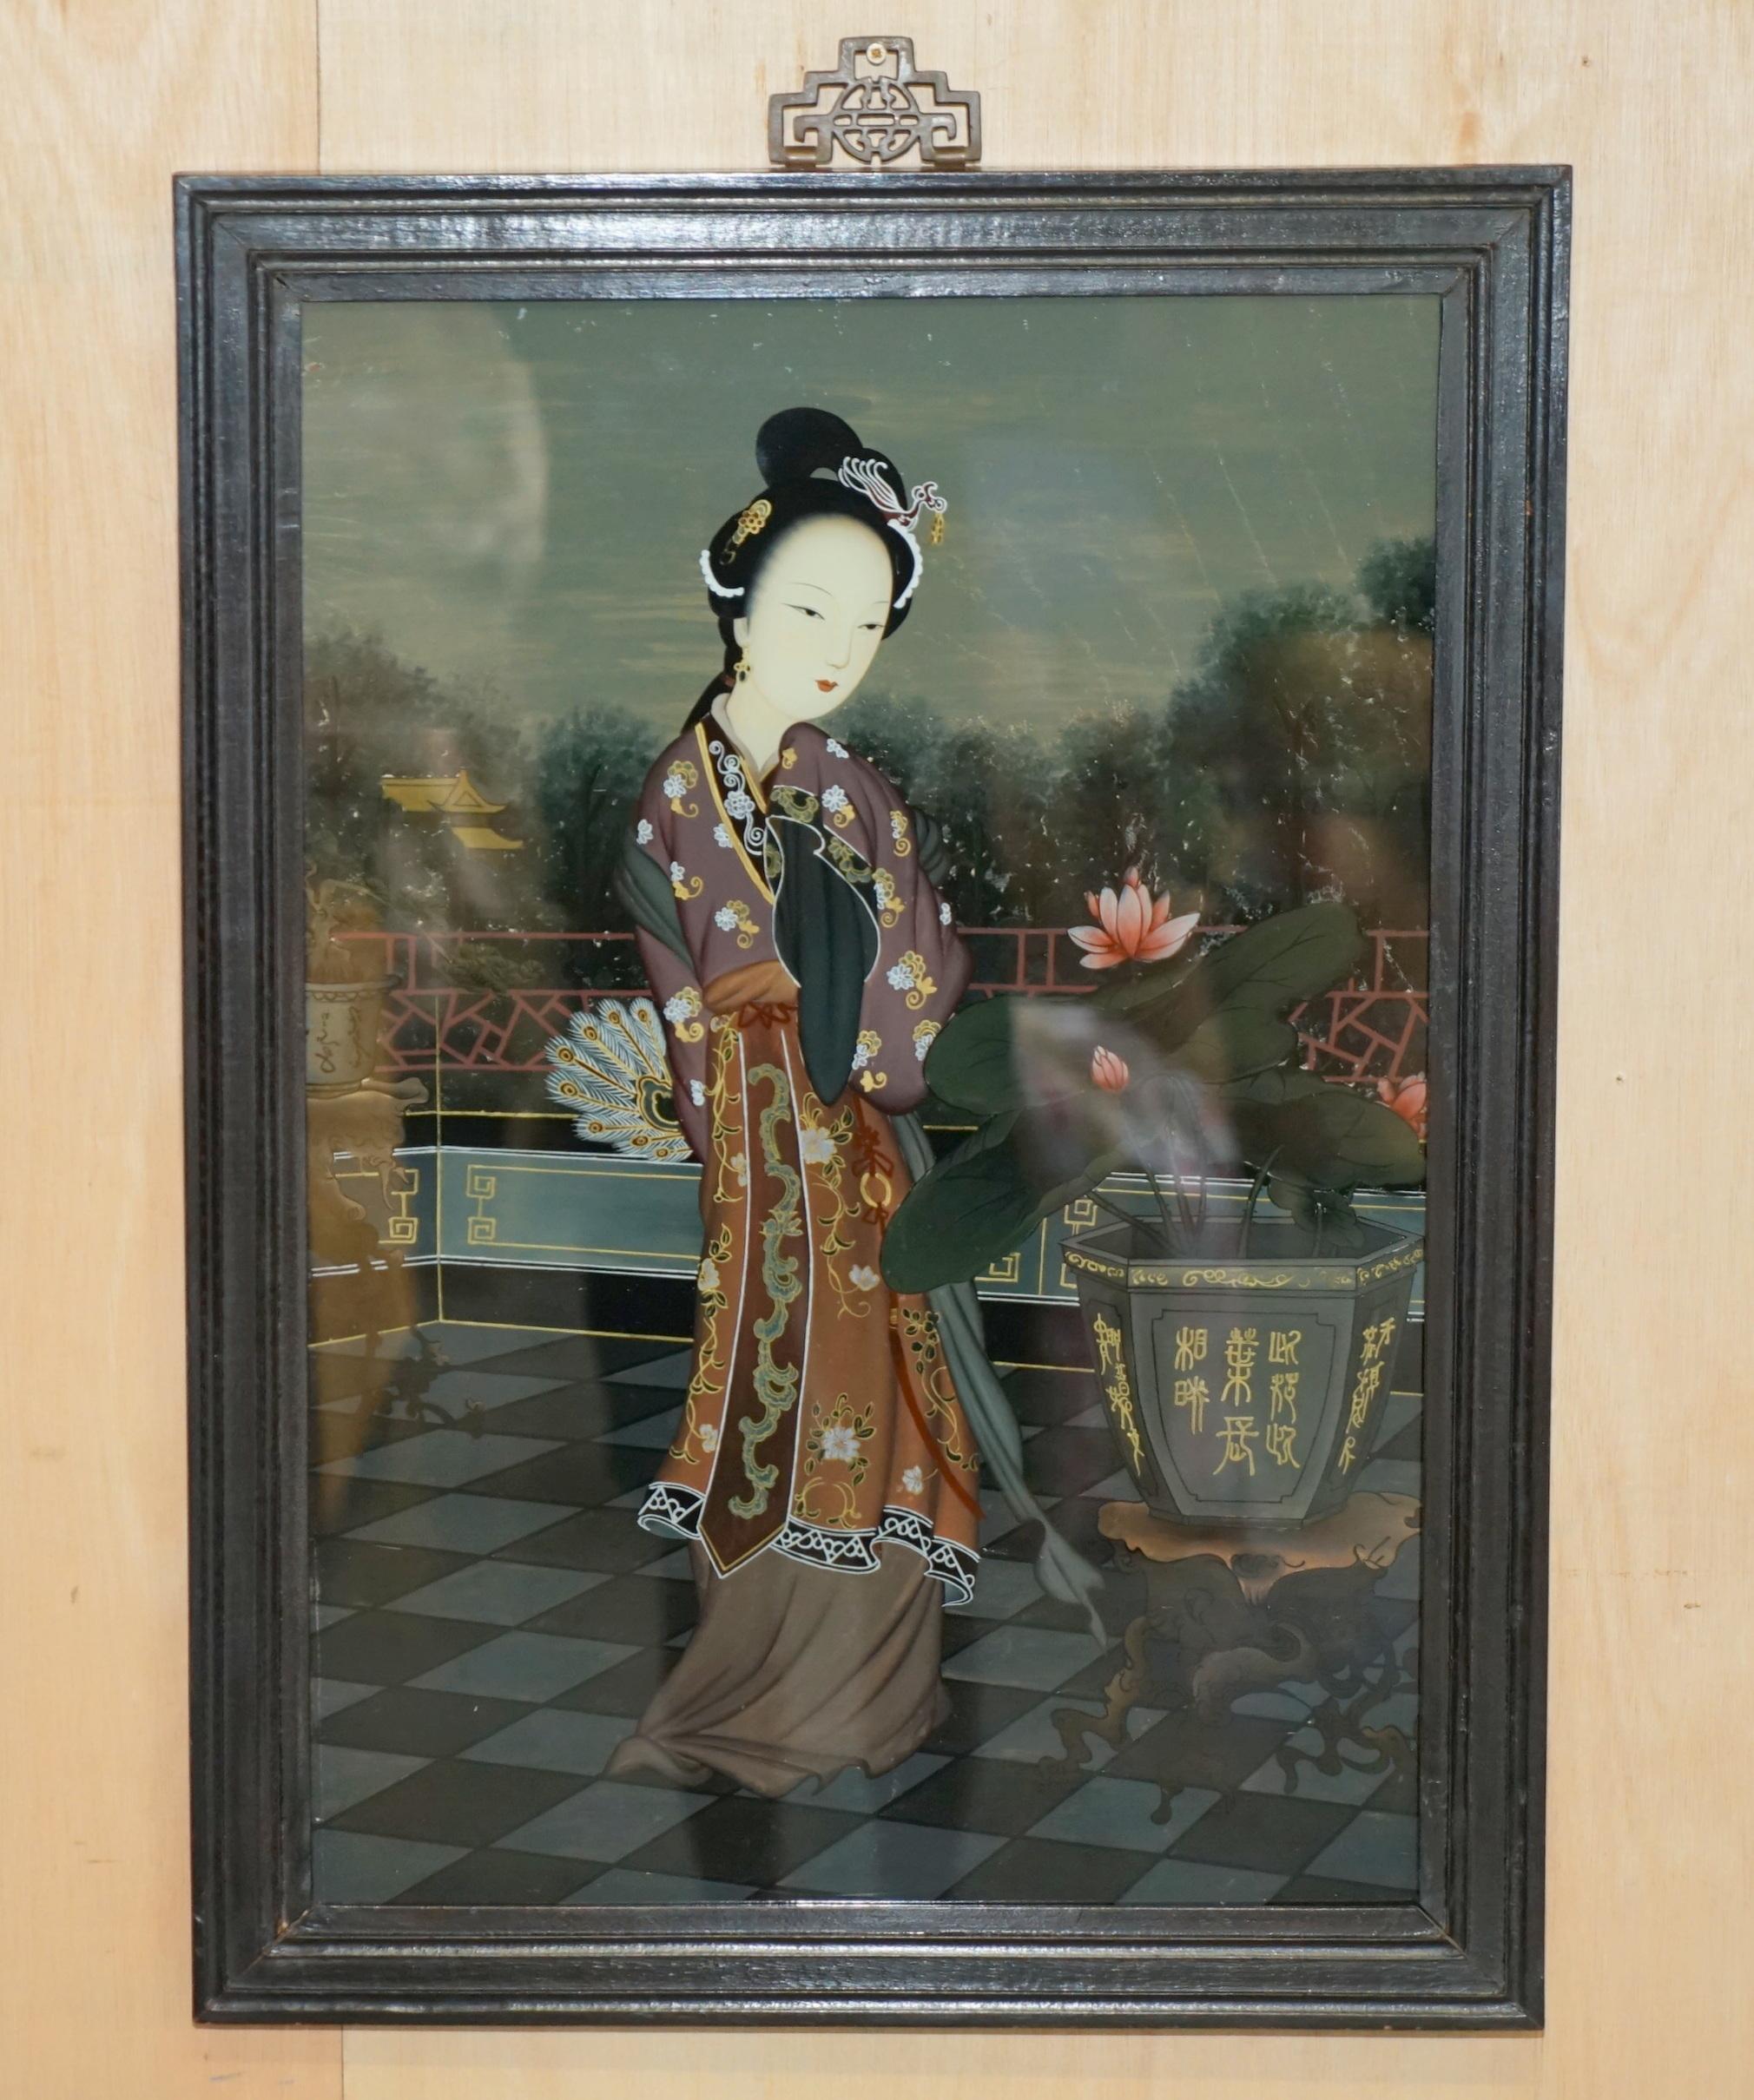 Royal House Antiques

Royal House Antiques freut sich, dieses erhabene Paar antiker chinesischer Ahnenporträts zum Verkauf anbieten zu können, die von Hand auf die Rückseite des Glases rückwärts gemalt wurden.

Bitte beachten Sie die Lieferkosten